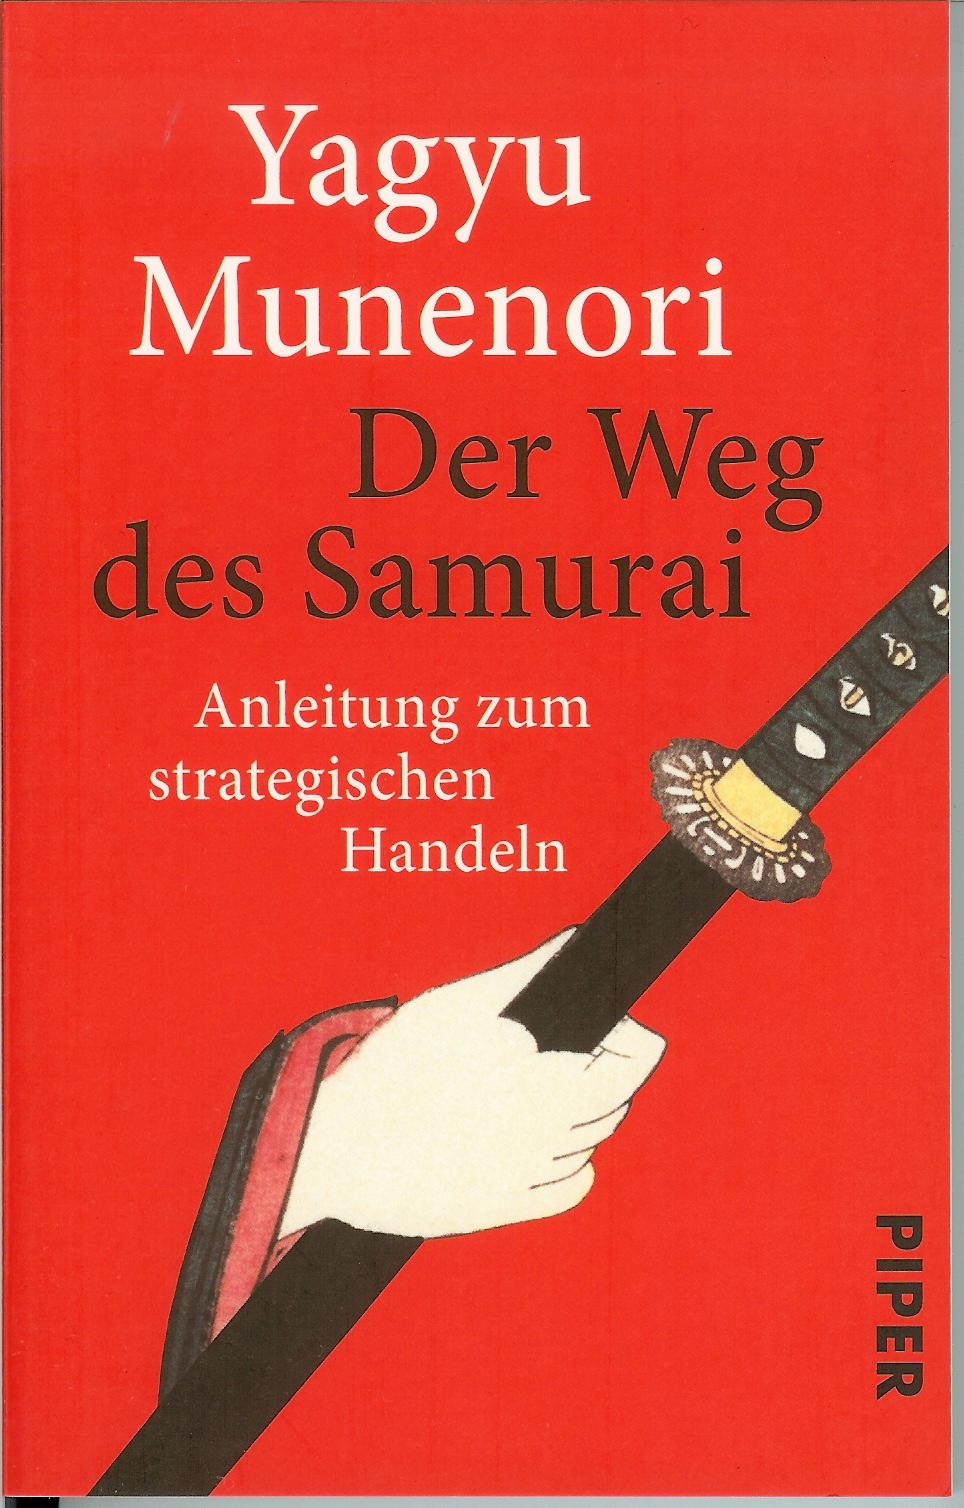 Der Weg des Samurai (Yagyu Munenori)